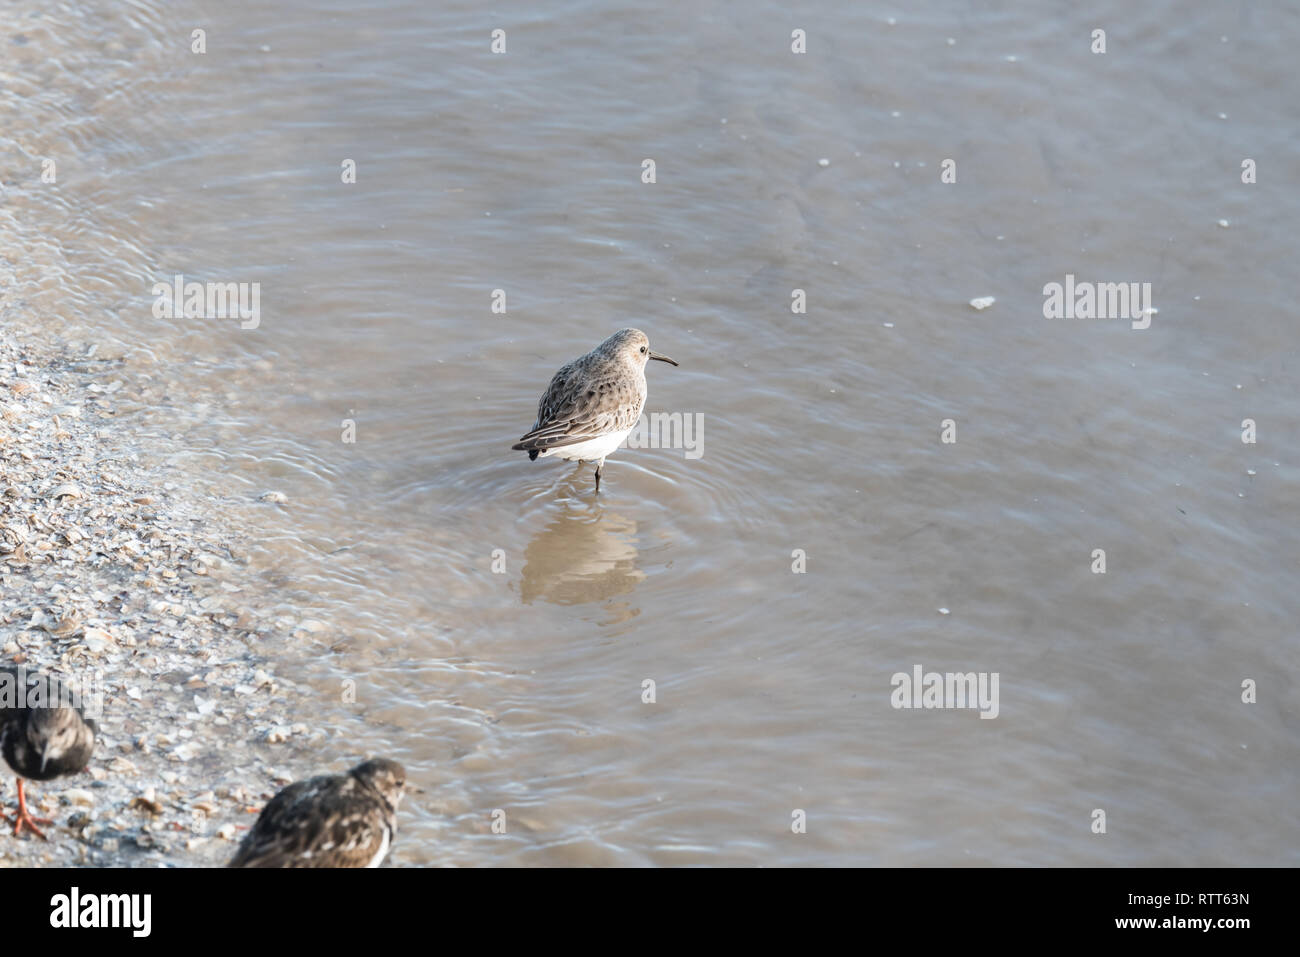 Sanderling standing in water Stock Photo